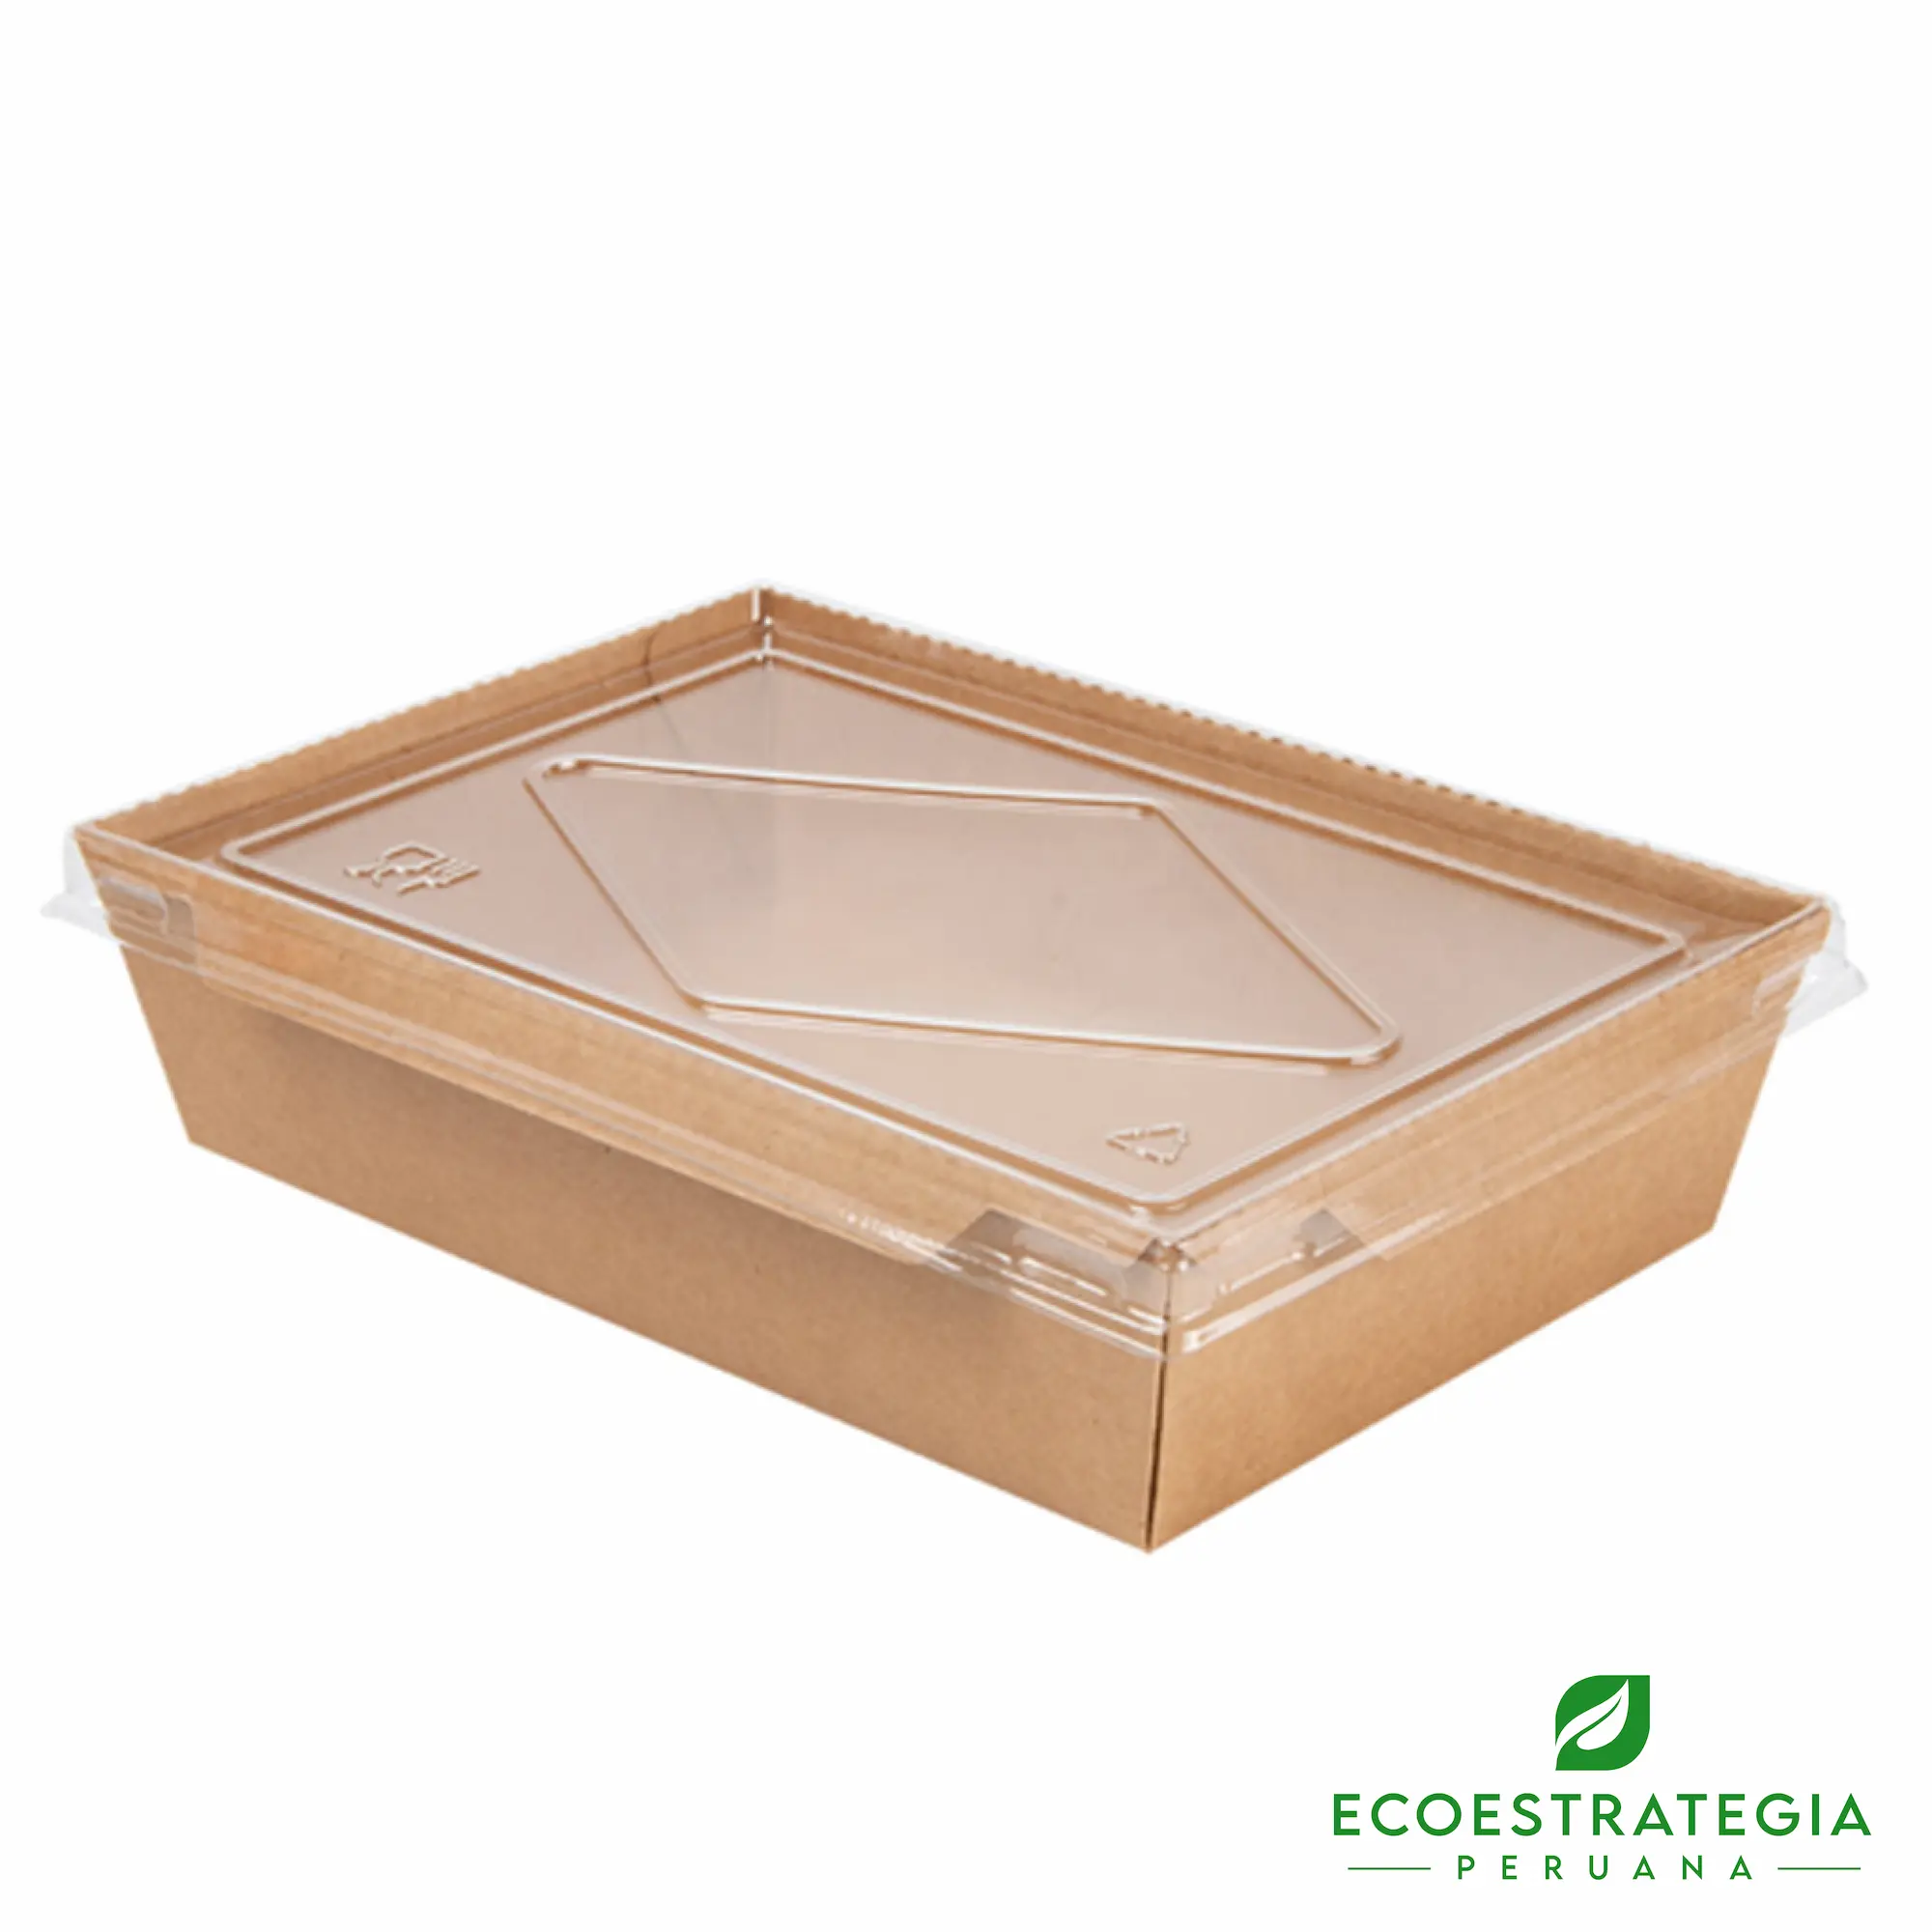 Esta bandeja biodegradable es de 2100ml y es de carton kraft. Envases descartables con gramaje ideal, cotiza tus bandejas, empaques, platos y tapers ecológicos